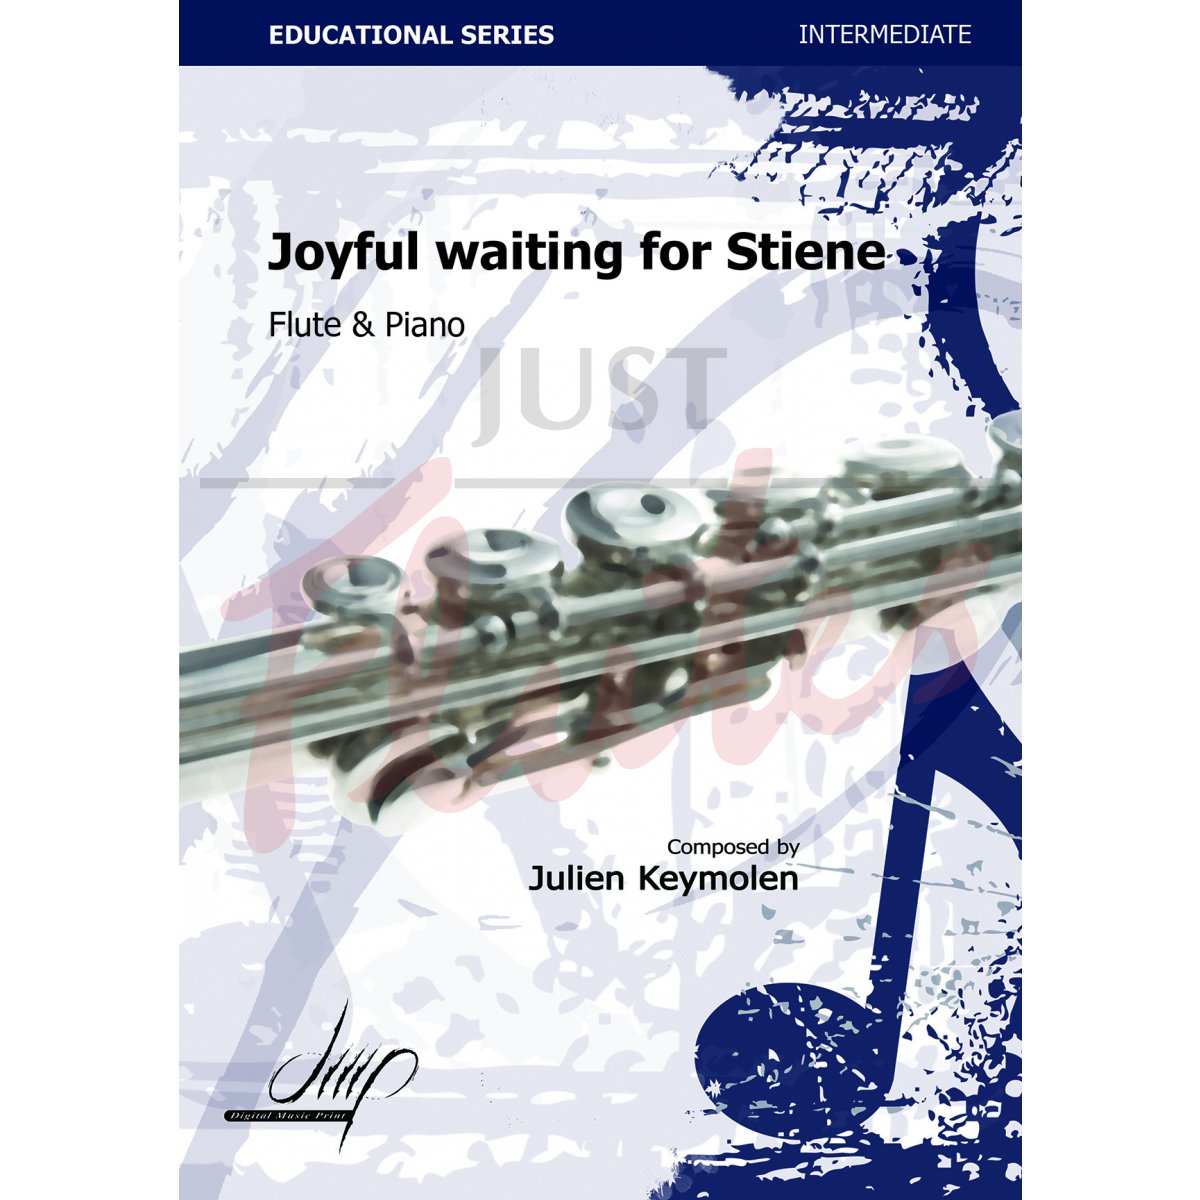 Joyful waiting for Stiene